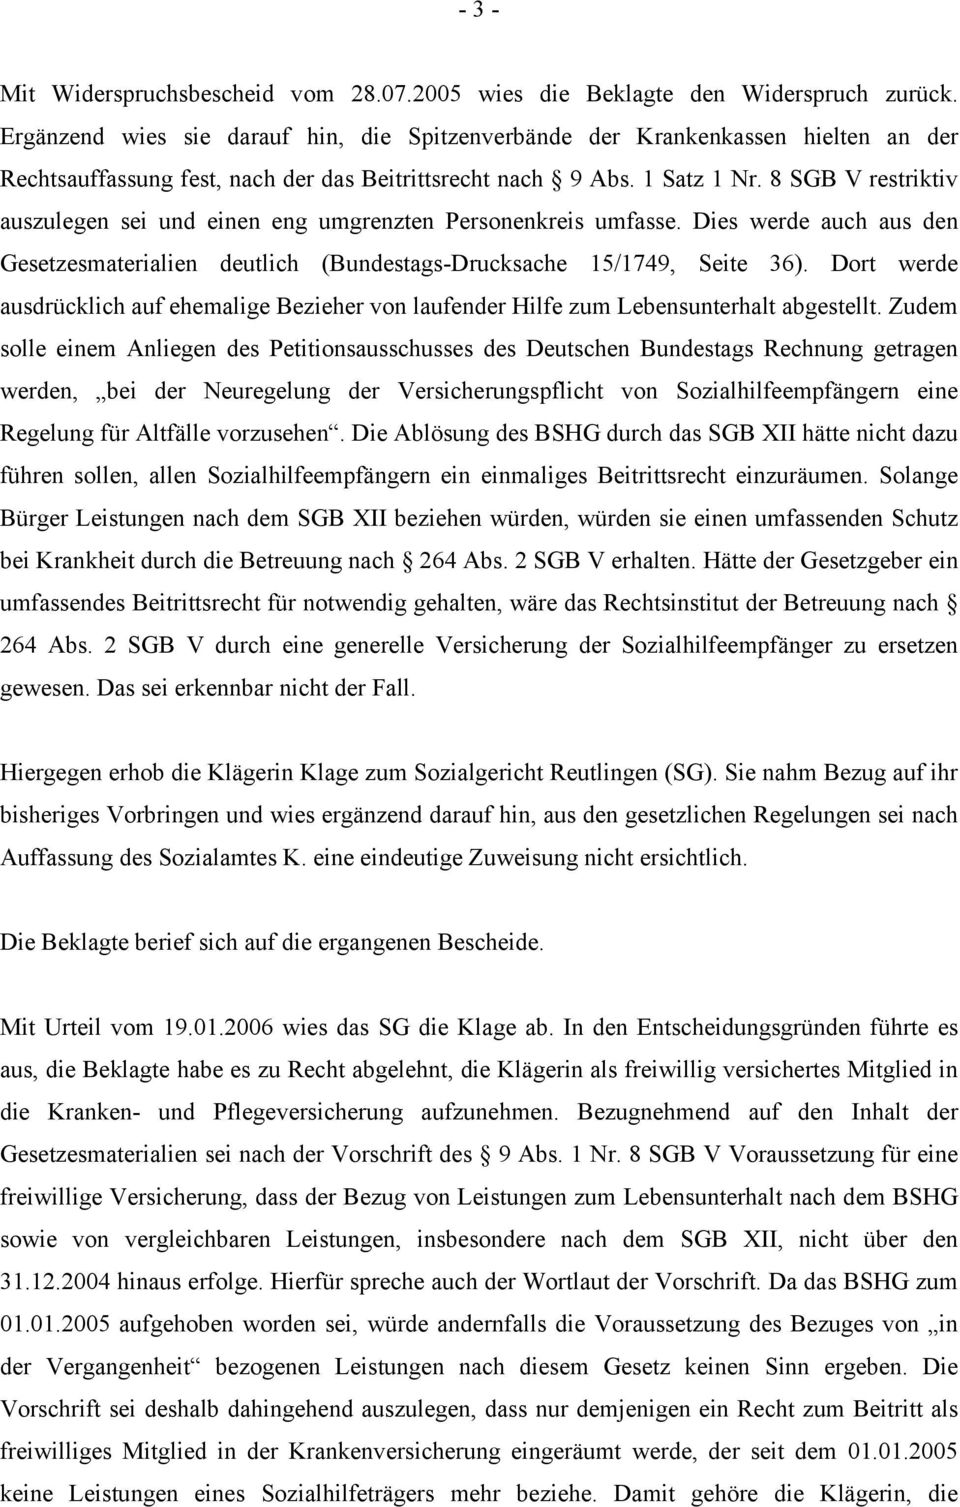 8 SGB V restriktiv auszulegen sei und einen eng umgrenzten Personenkreis umfasse. Dies werde auch aus den Gesetzesmaterialien deutlich (Bundestags-Drucksache 15/1749, Seite 36).